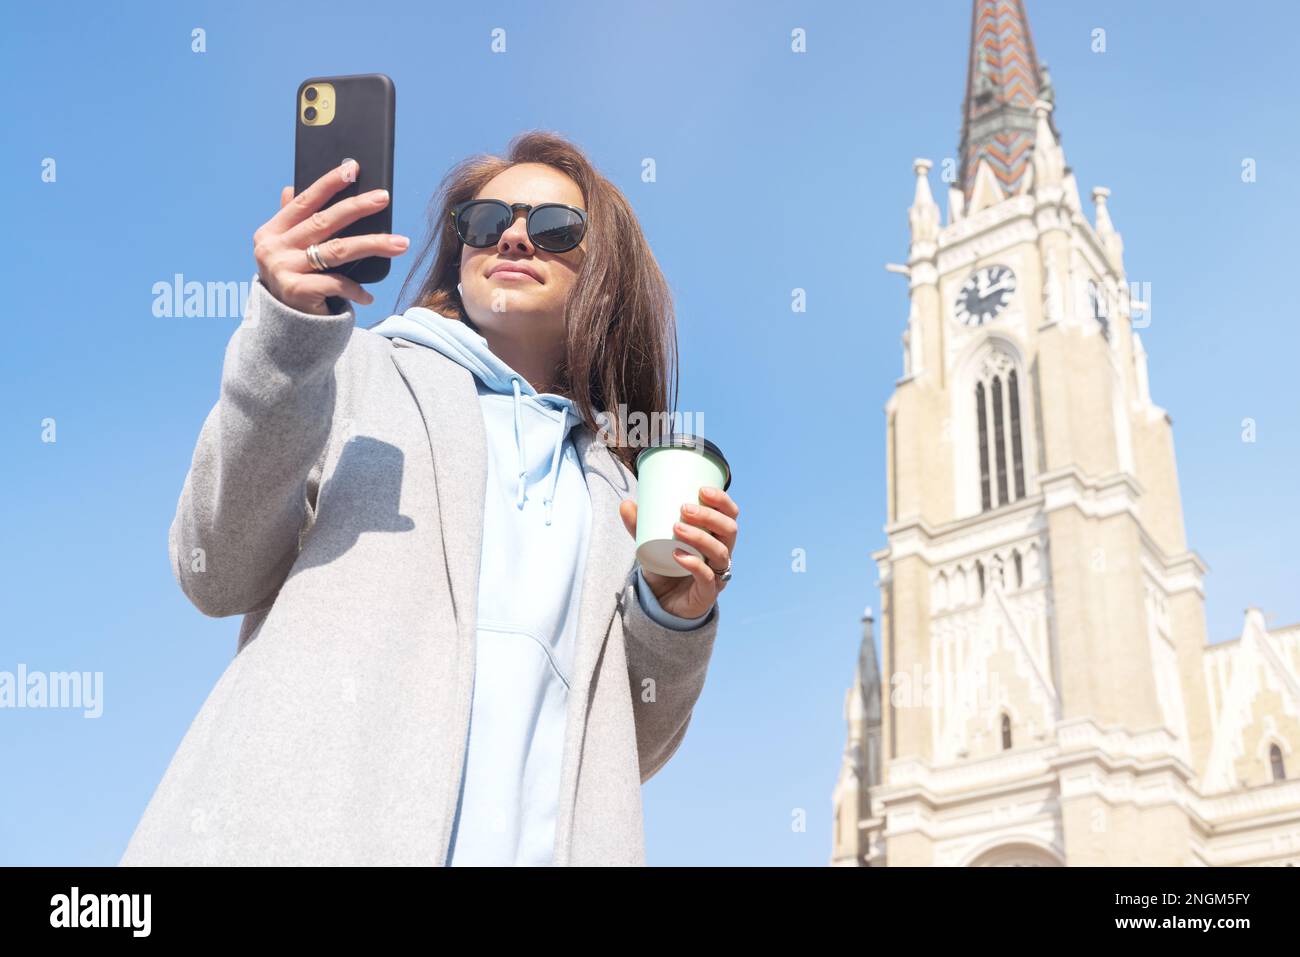 Donna con occhiali da sole che indossa un cappotto in piedi sulla piazza della città vecchia tenendo in mano una tazza di caffè e un telefono cellulare. Foto Stock